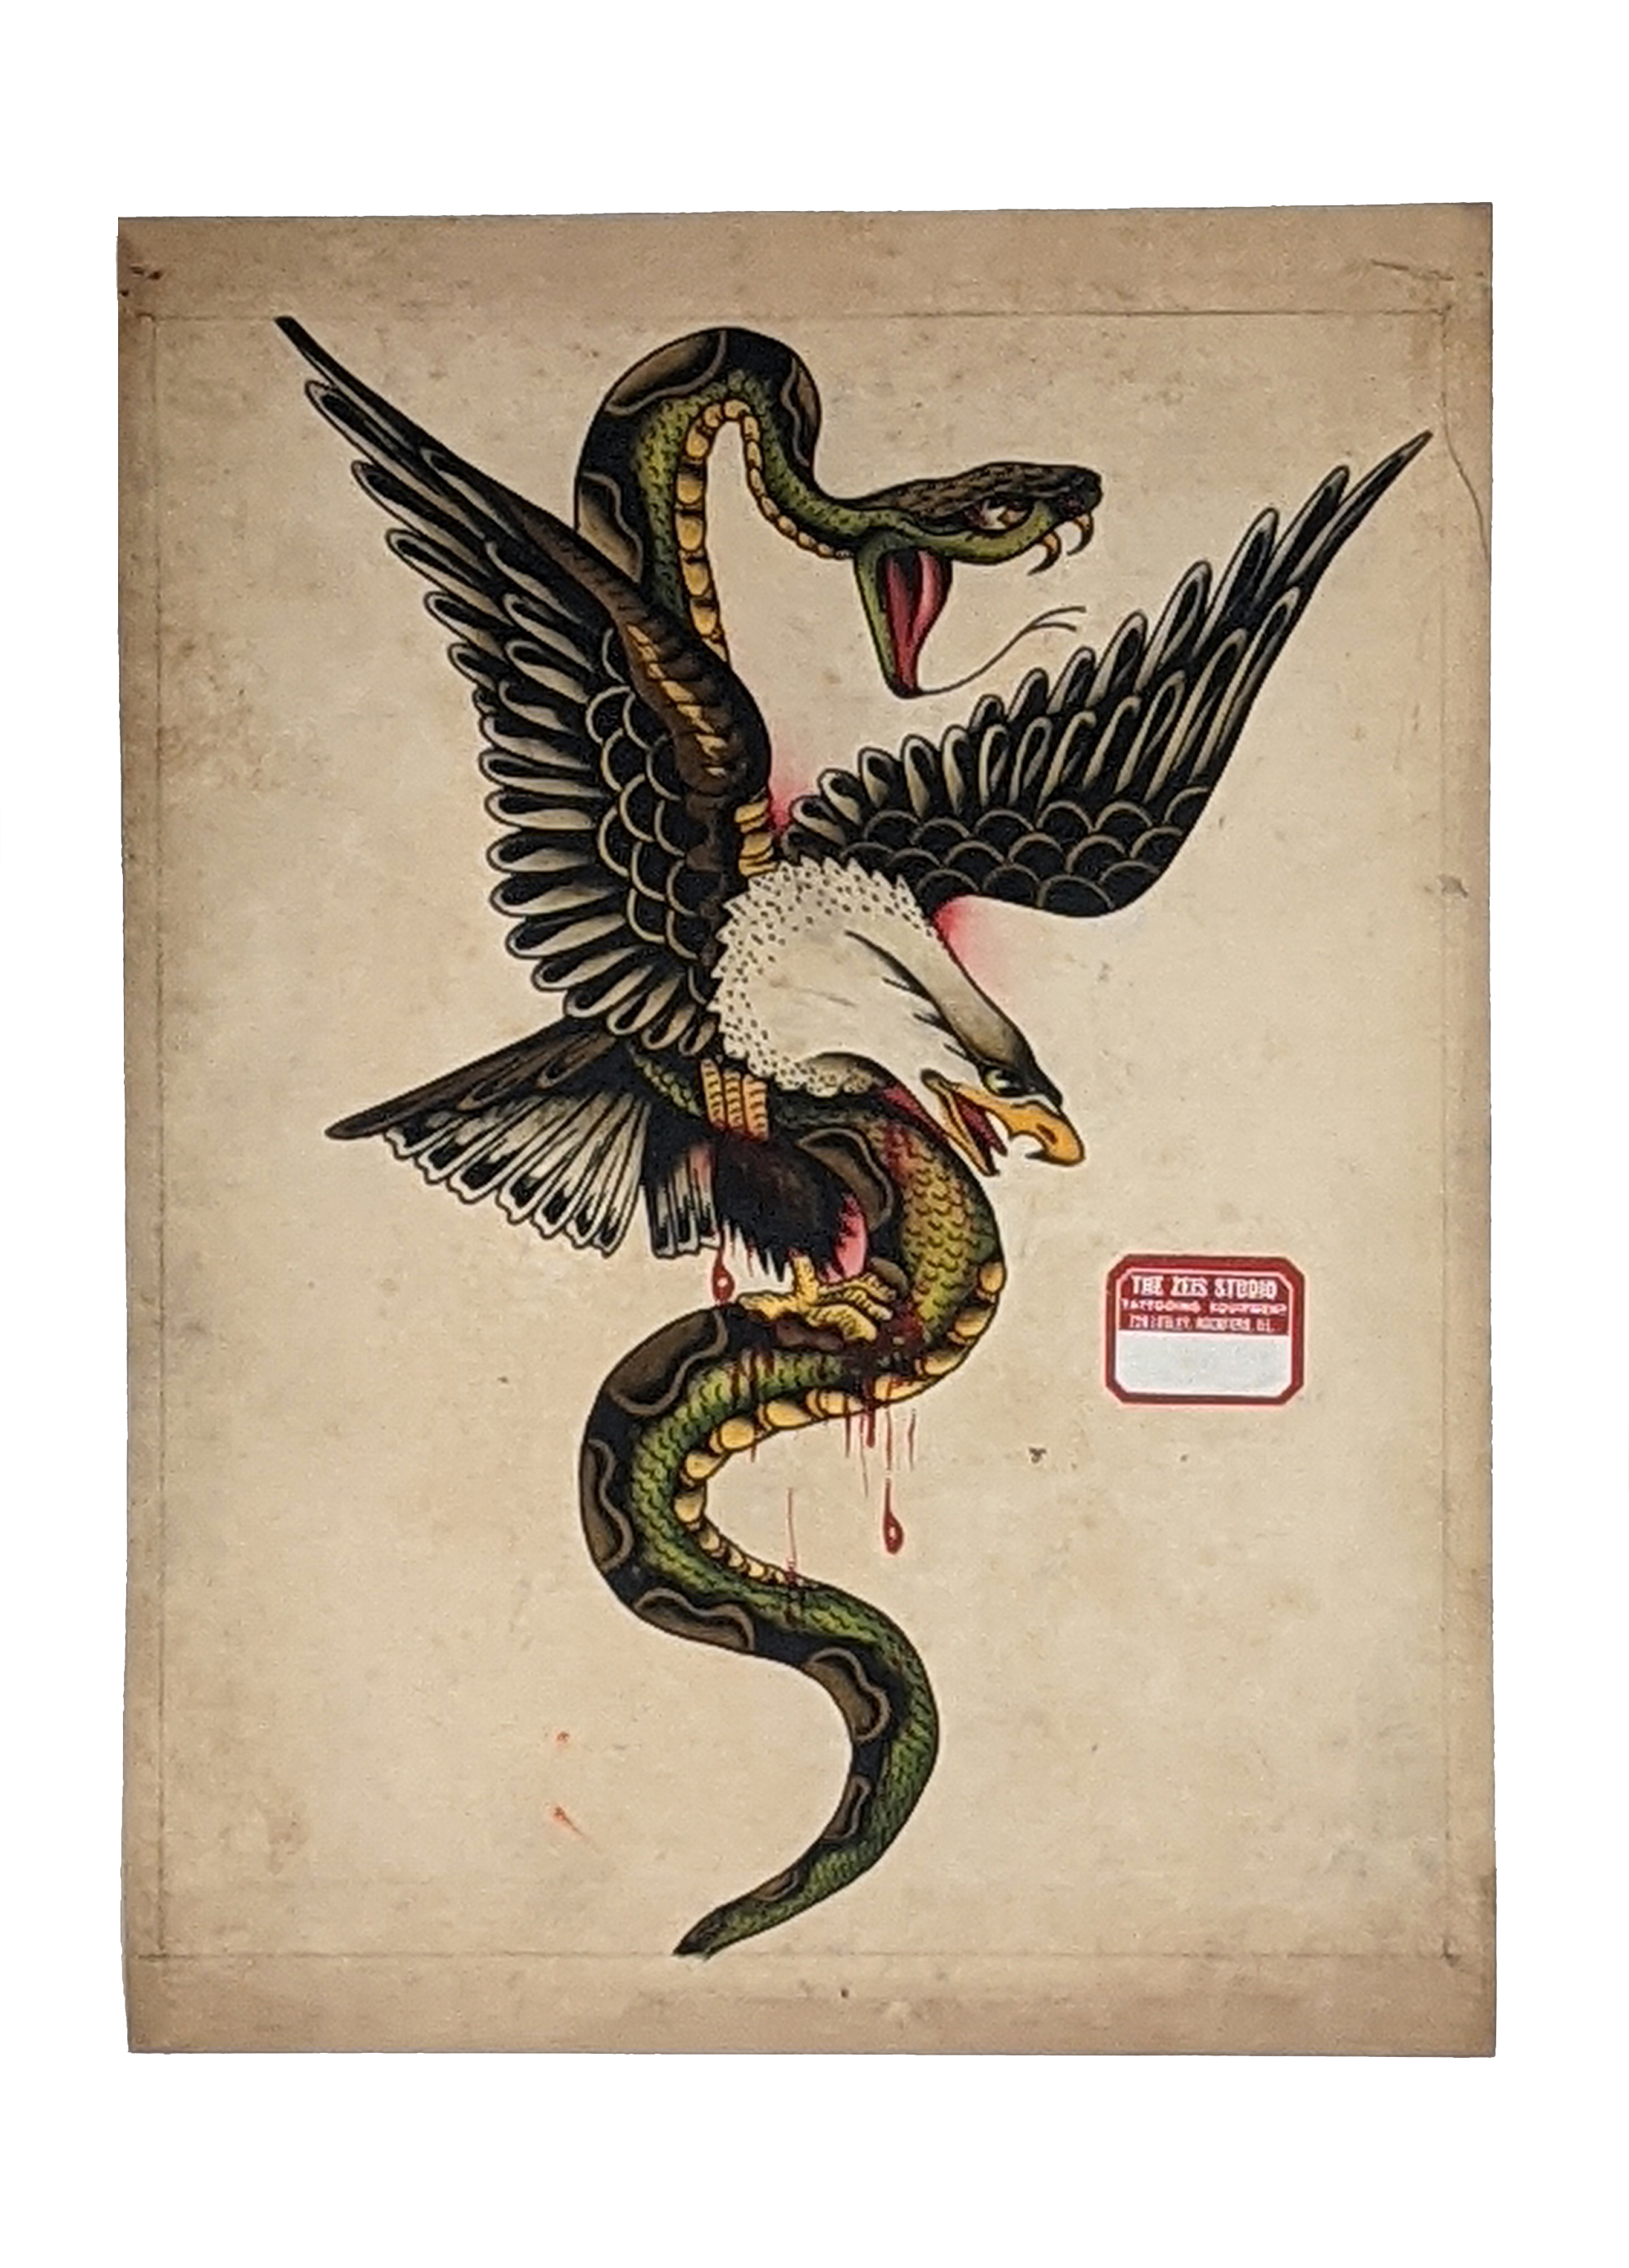 snake vs eagle poster on white background